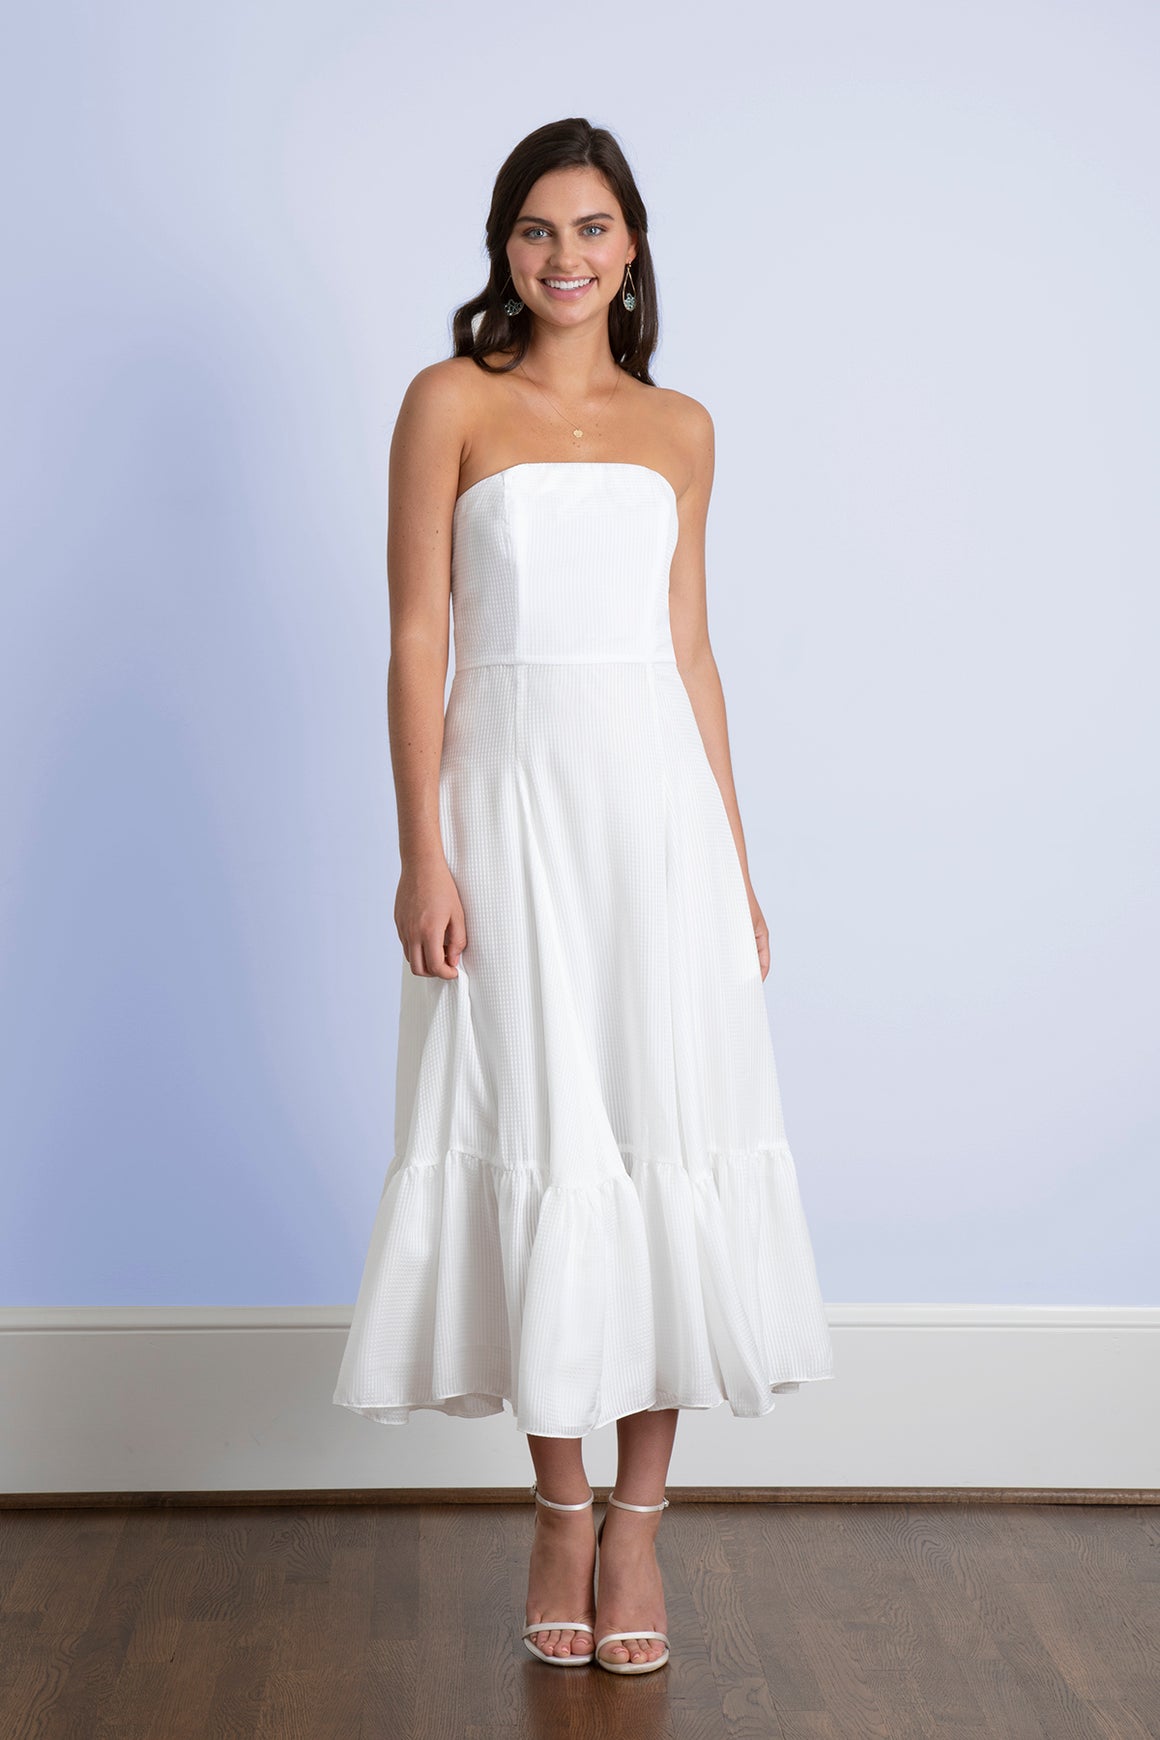 3 Femsupport White Wedding Dress Strapless Bra for the Big Day